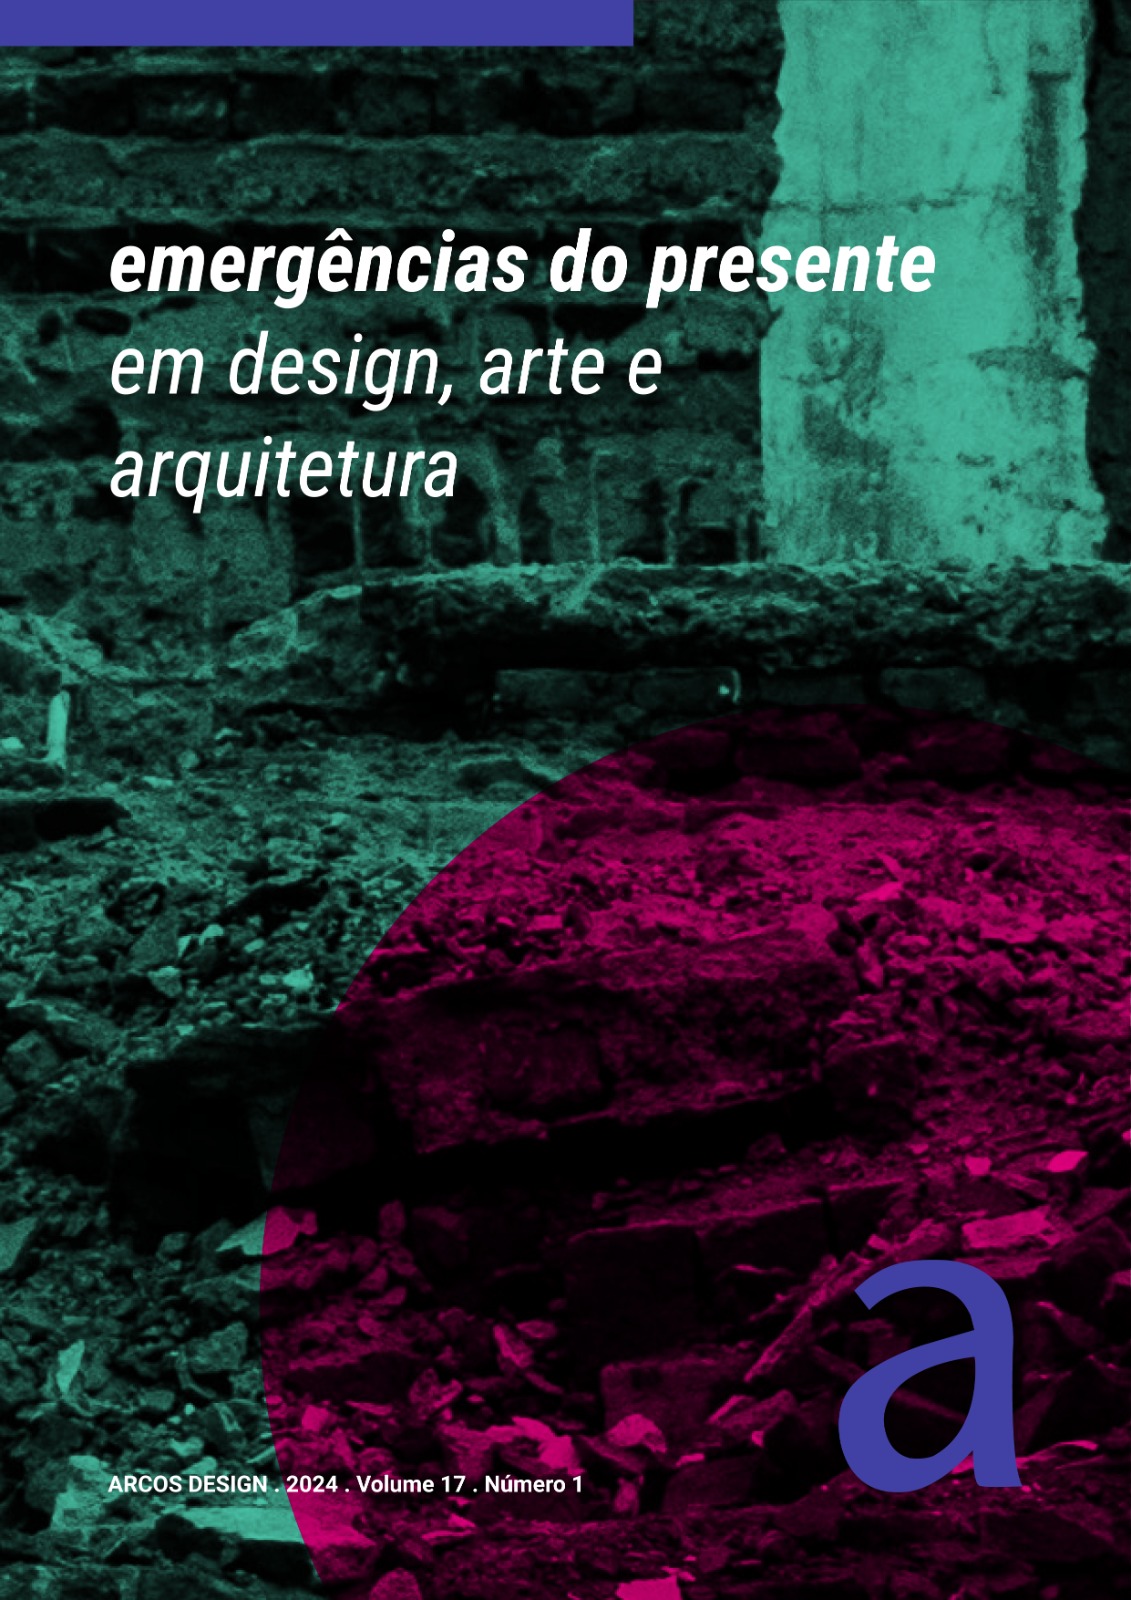 Edifício em ruínas com o o texto "emergências do presente em design, arte e arquitetura".